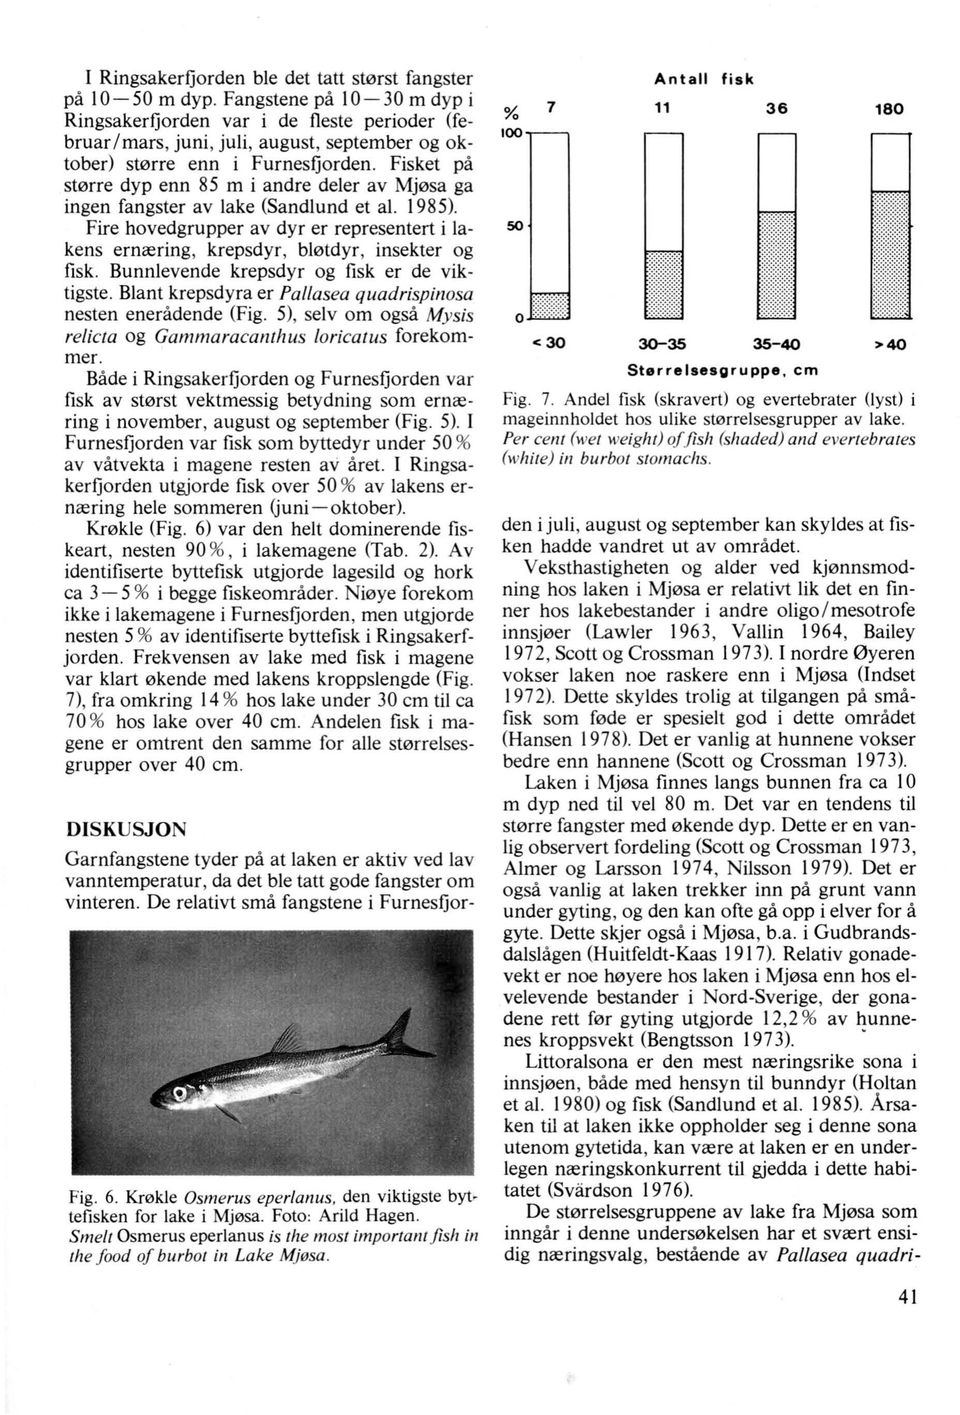 Fisket på større dyp enn 85 m i andre deler av Mjøsa ga ingen fangster av lake (Sandlund et al. 1985). Fire hovedgrupper av dyr er representert i lakens ernæring, krepsdyr, bløtdyr, insekter og fisk.